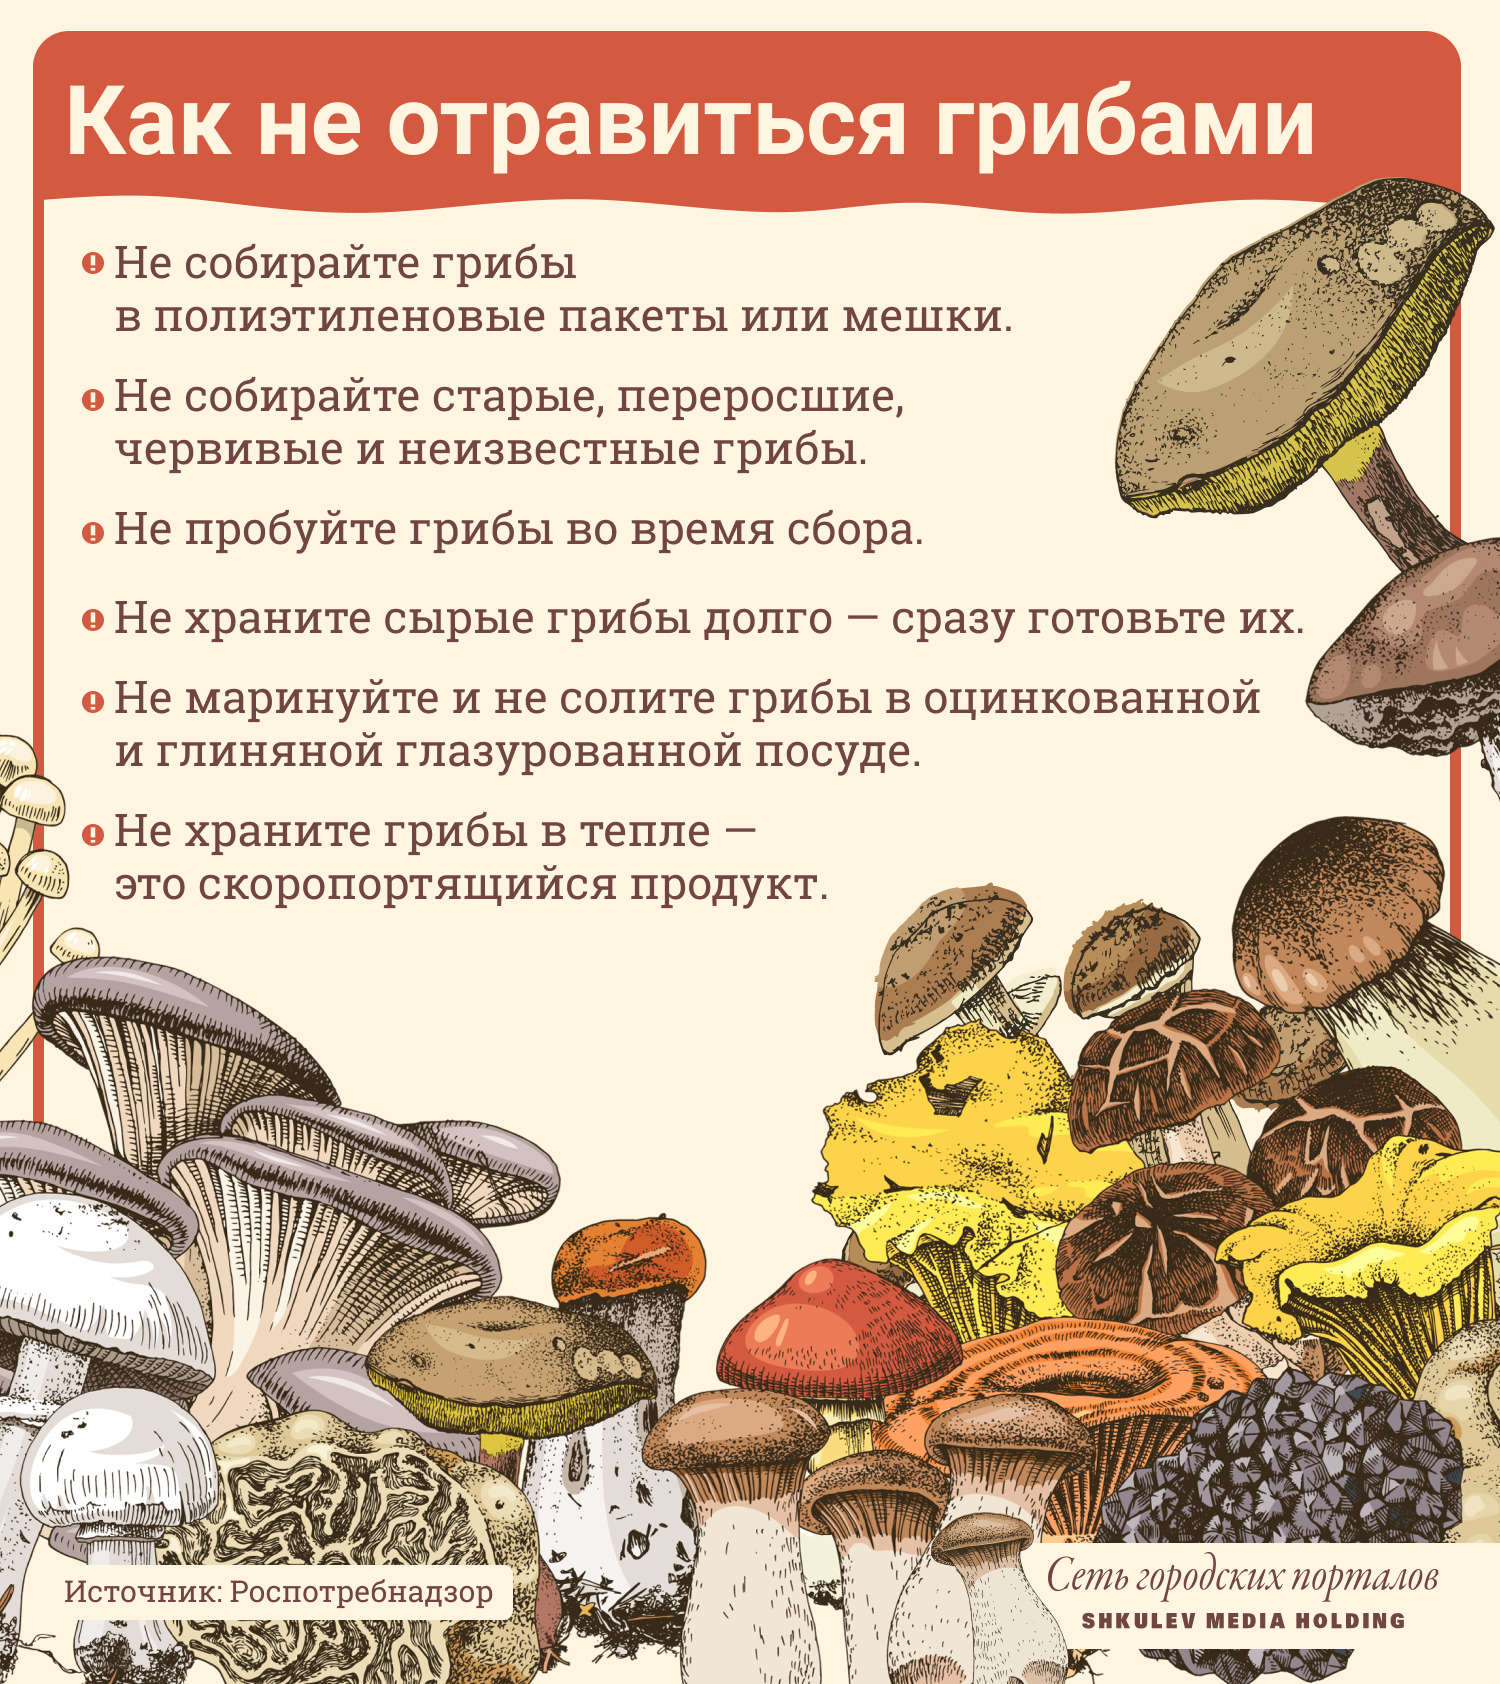 Шесть простых правил, чтобы не отравиться грибами